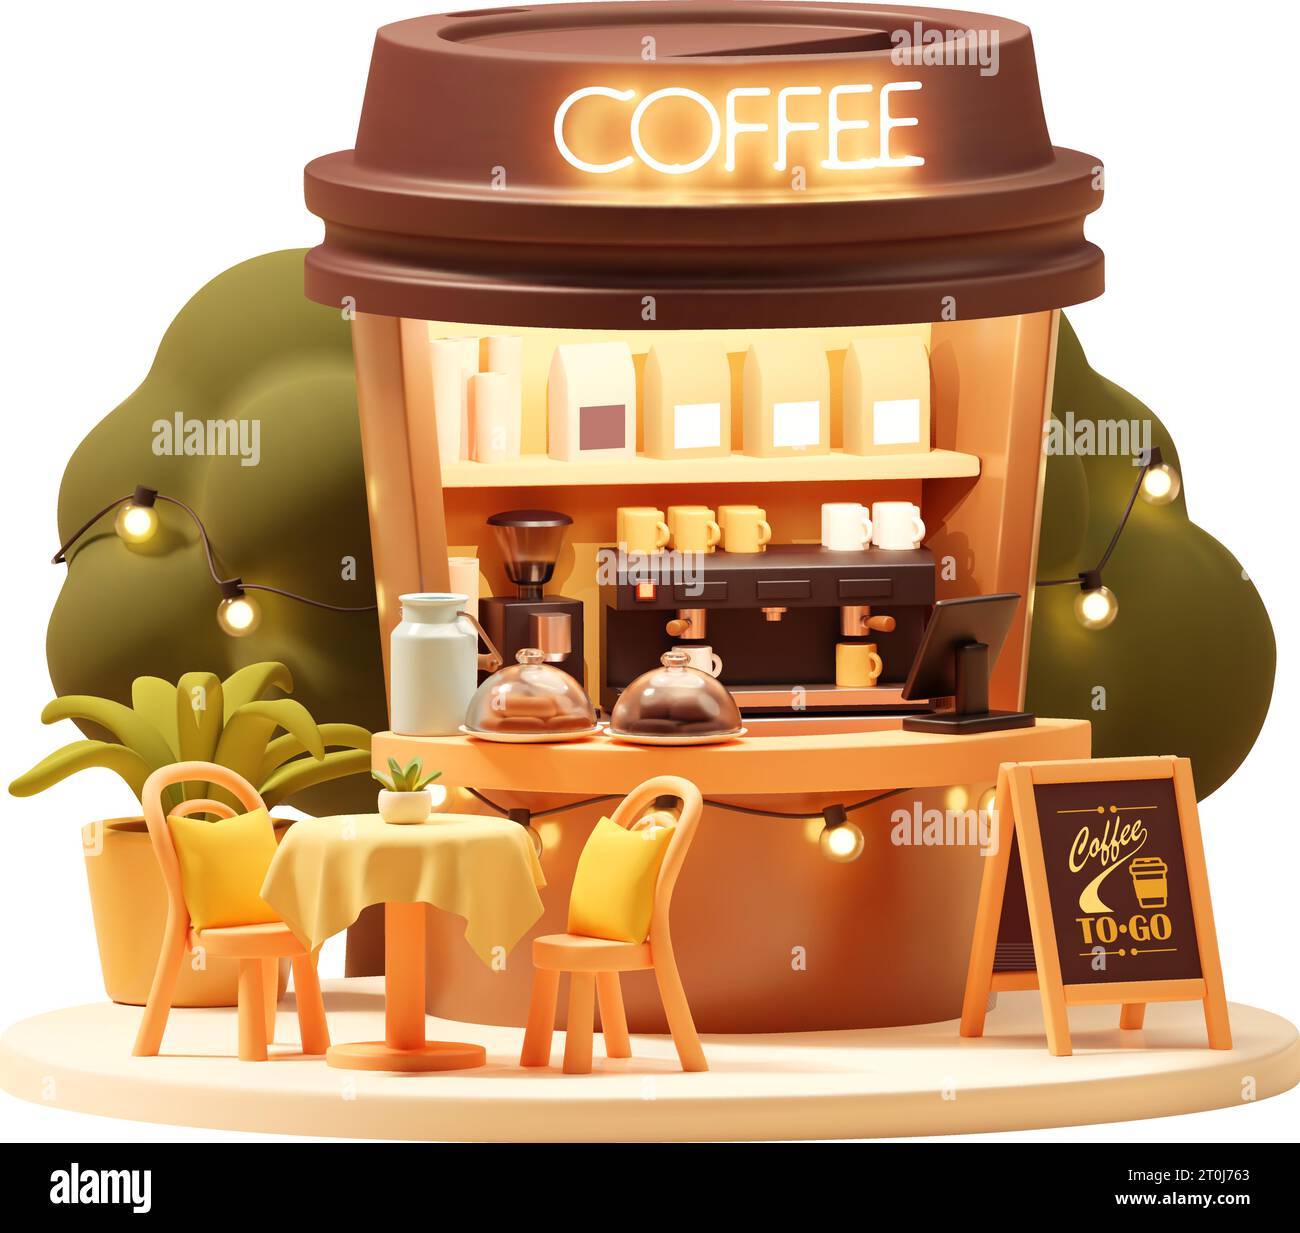 Vektor kleine Kaffeekabine oder Kiosk. Coffee To Go-Stand in der Tasse, Kaffeemaschine und Mahlwerk, Tisch im Freien, Sitze, Theke, Kasse und Menü Stock Vektor